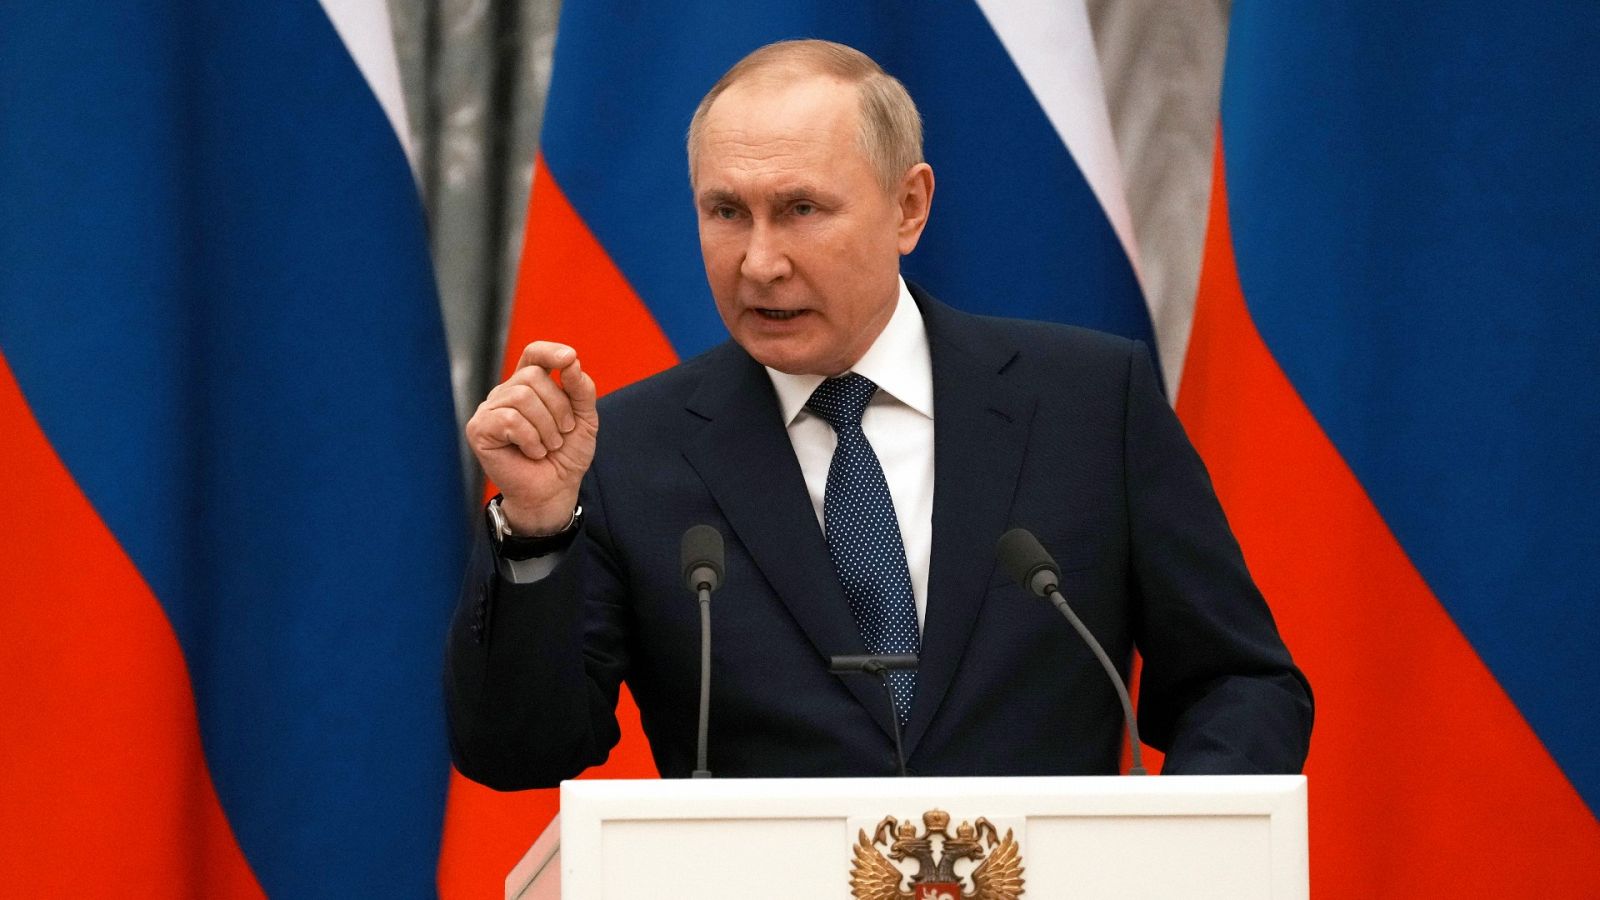 14 Horas -  Vladimir Putin: "Si Ucrania no entra en la OTAN, la situación podría reconducirse" - Escuchar ahora